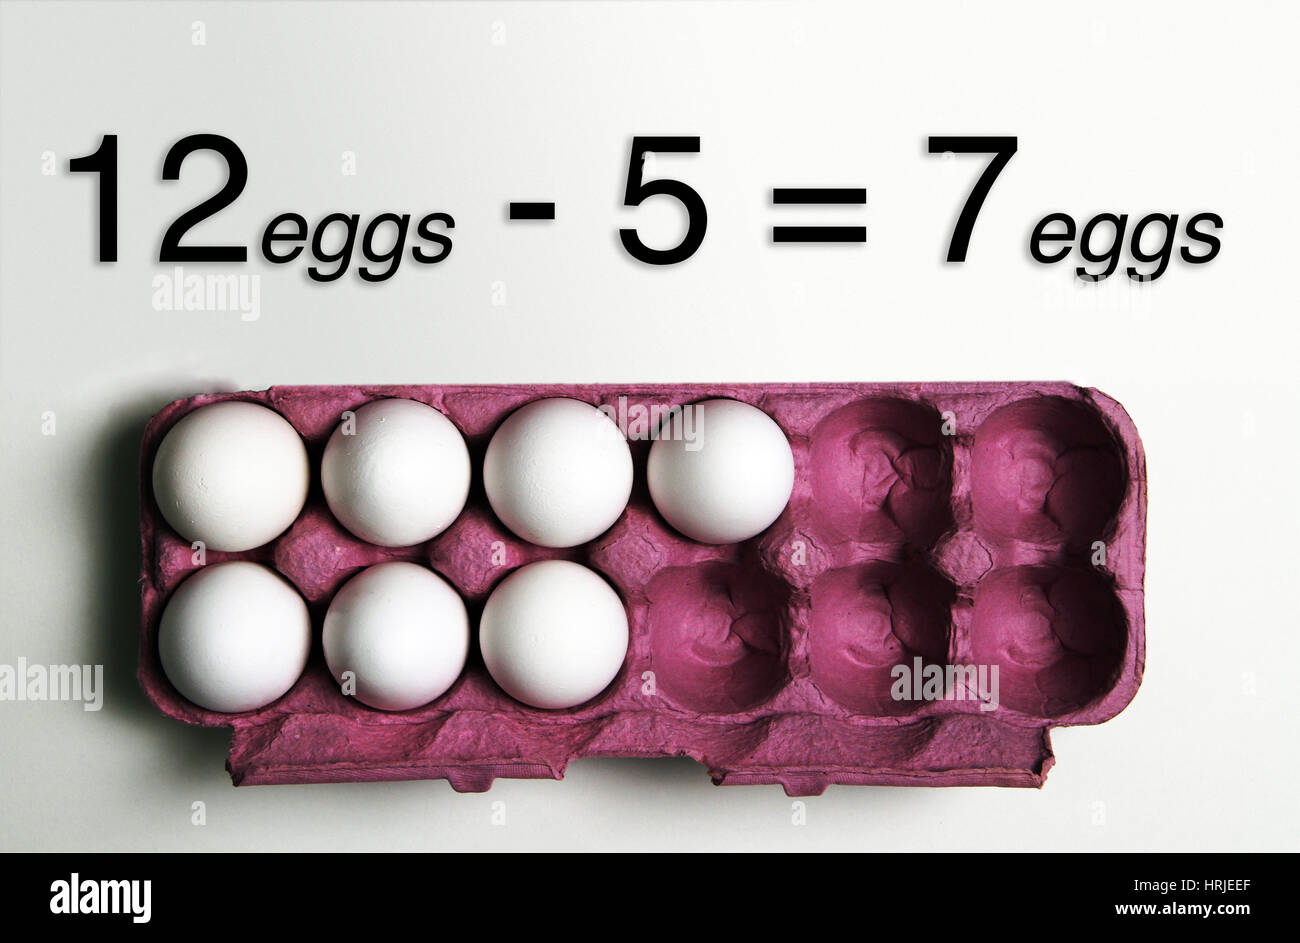 5 Eggs used & 7 Eggs Left Stock Photo